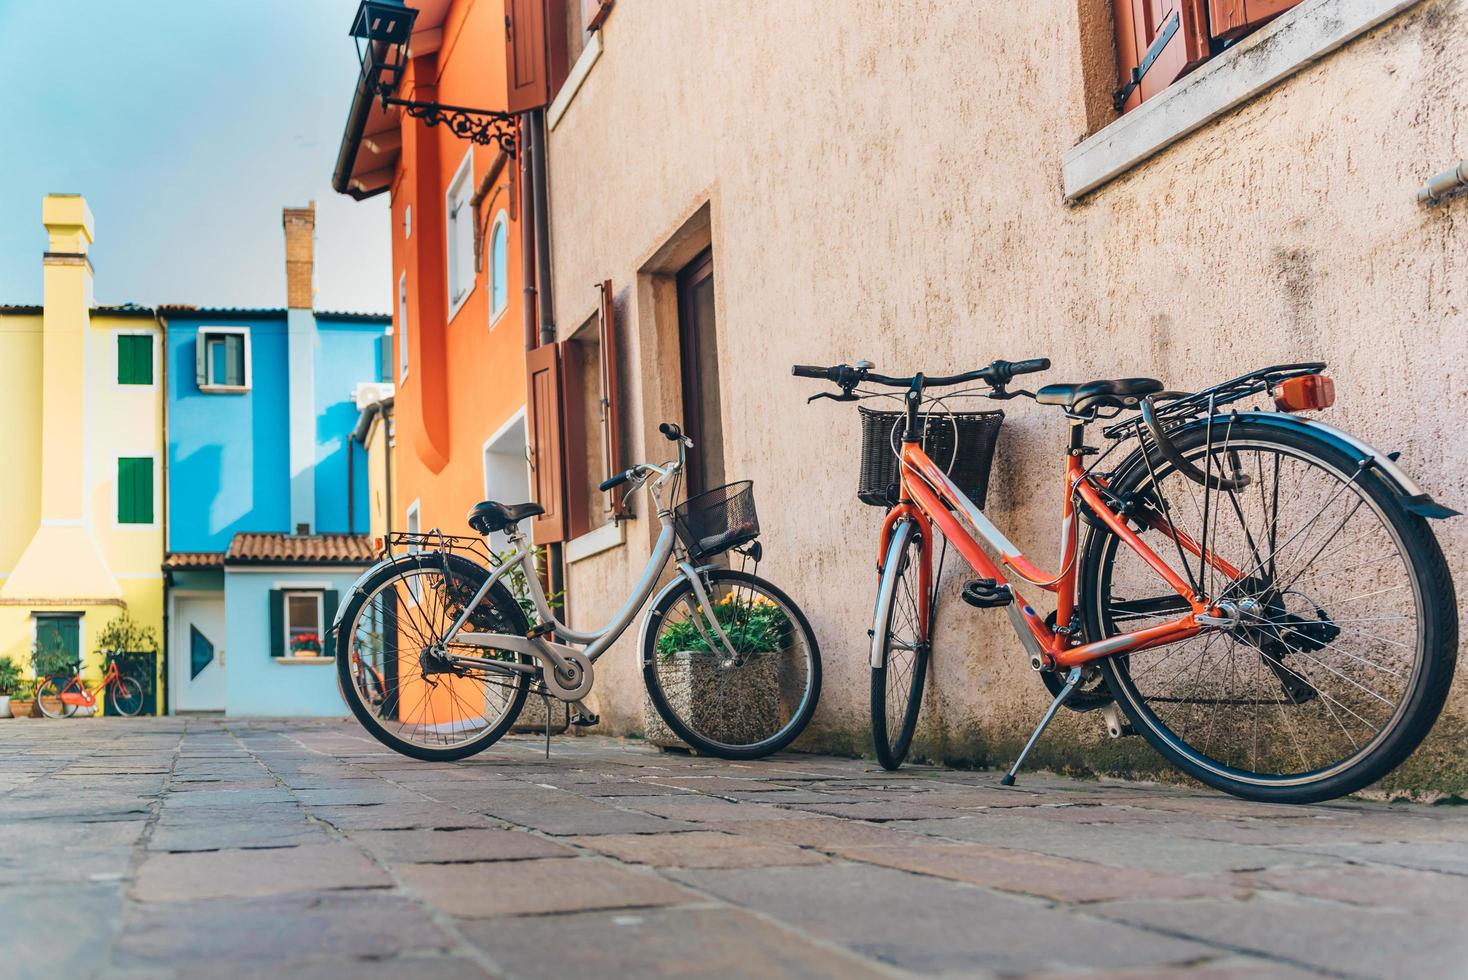 biciclette nel distretto turistico della vecchia città provinciale di caorle in italia foto